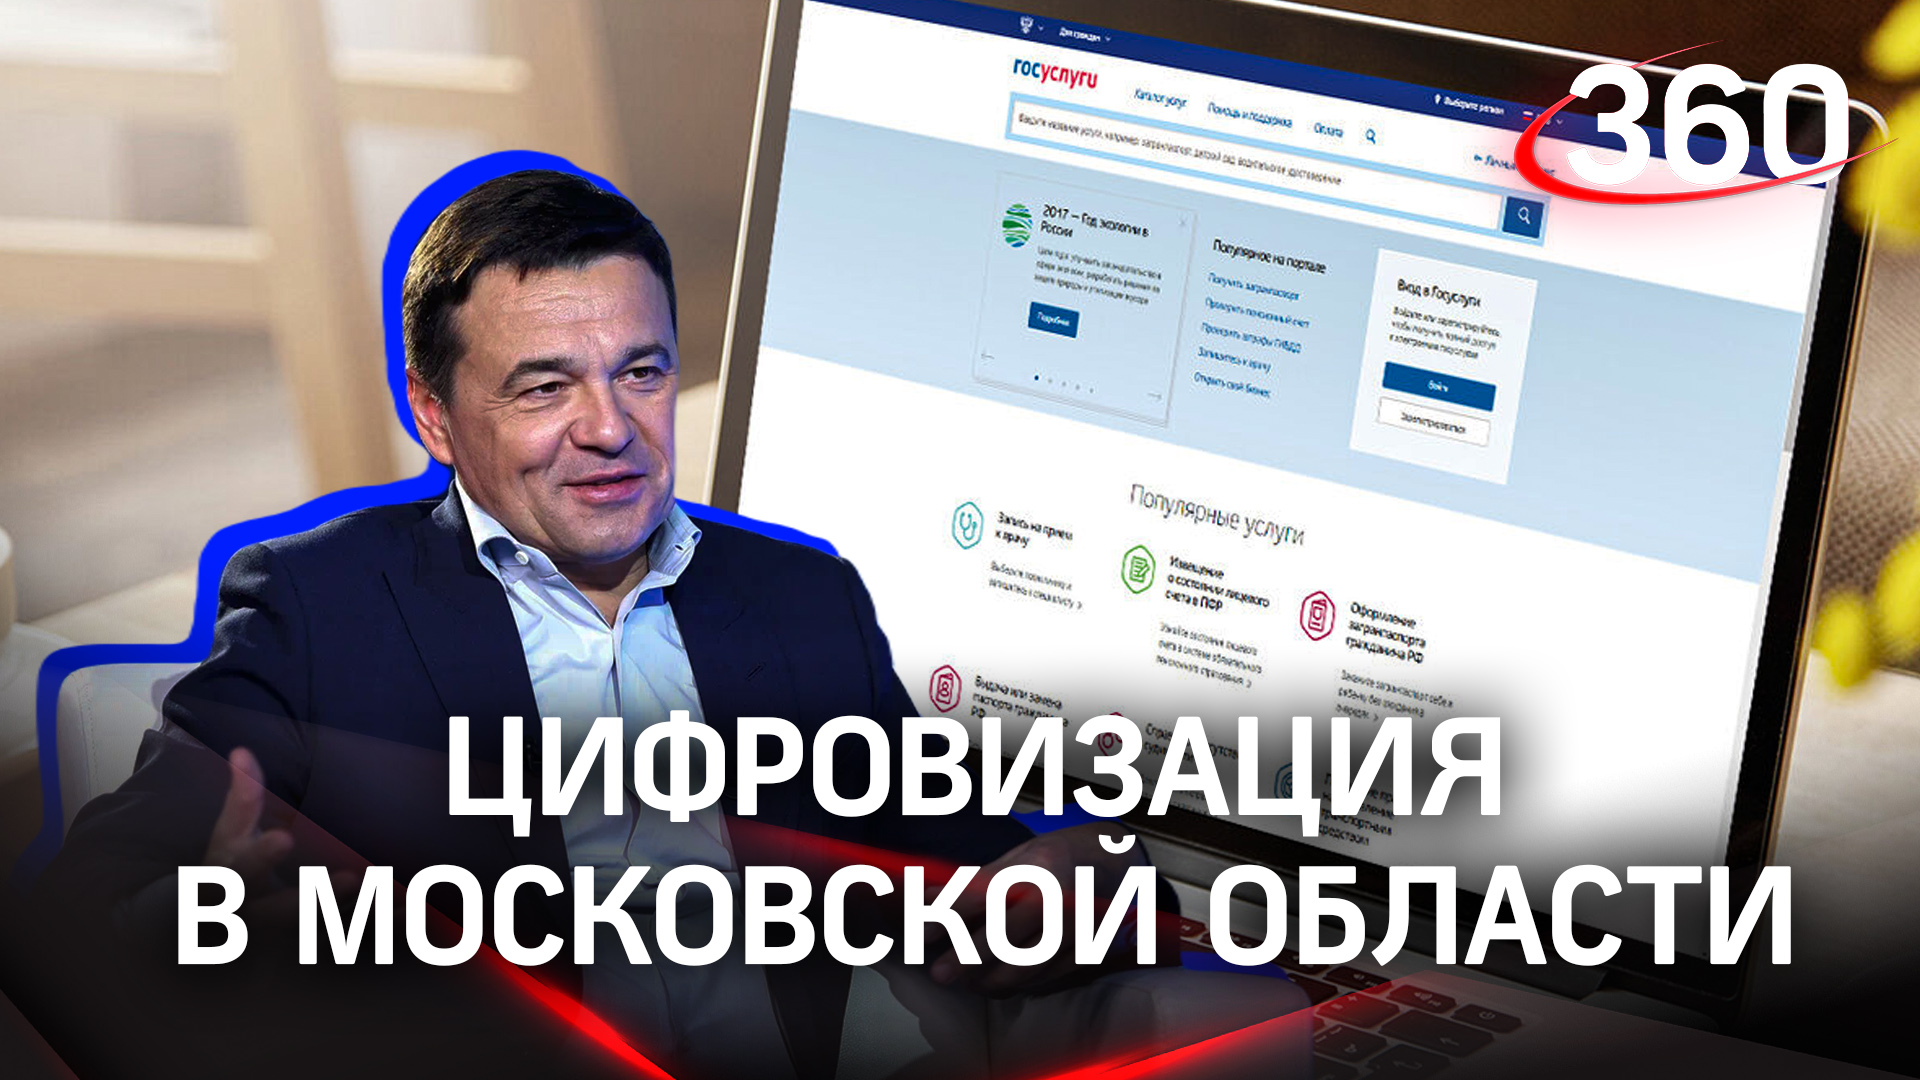 Услуги в электронном виде: как цифровизация повлияла на Московскую область